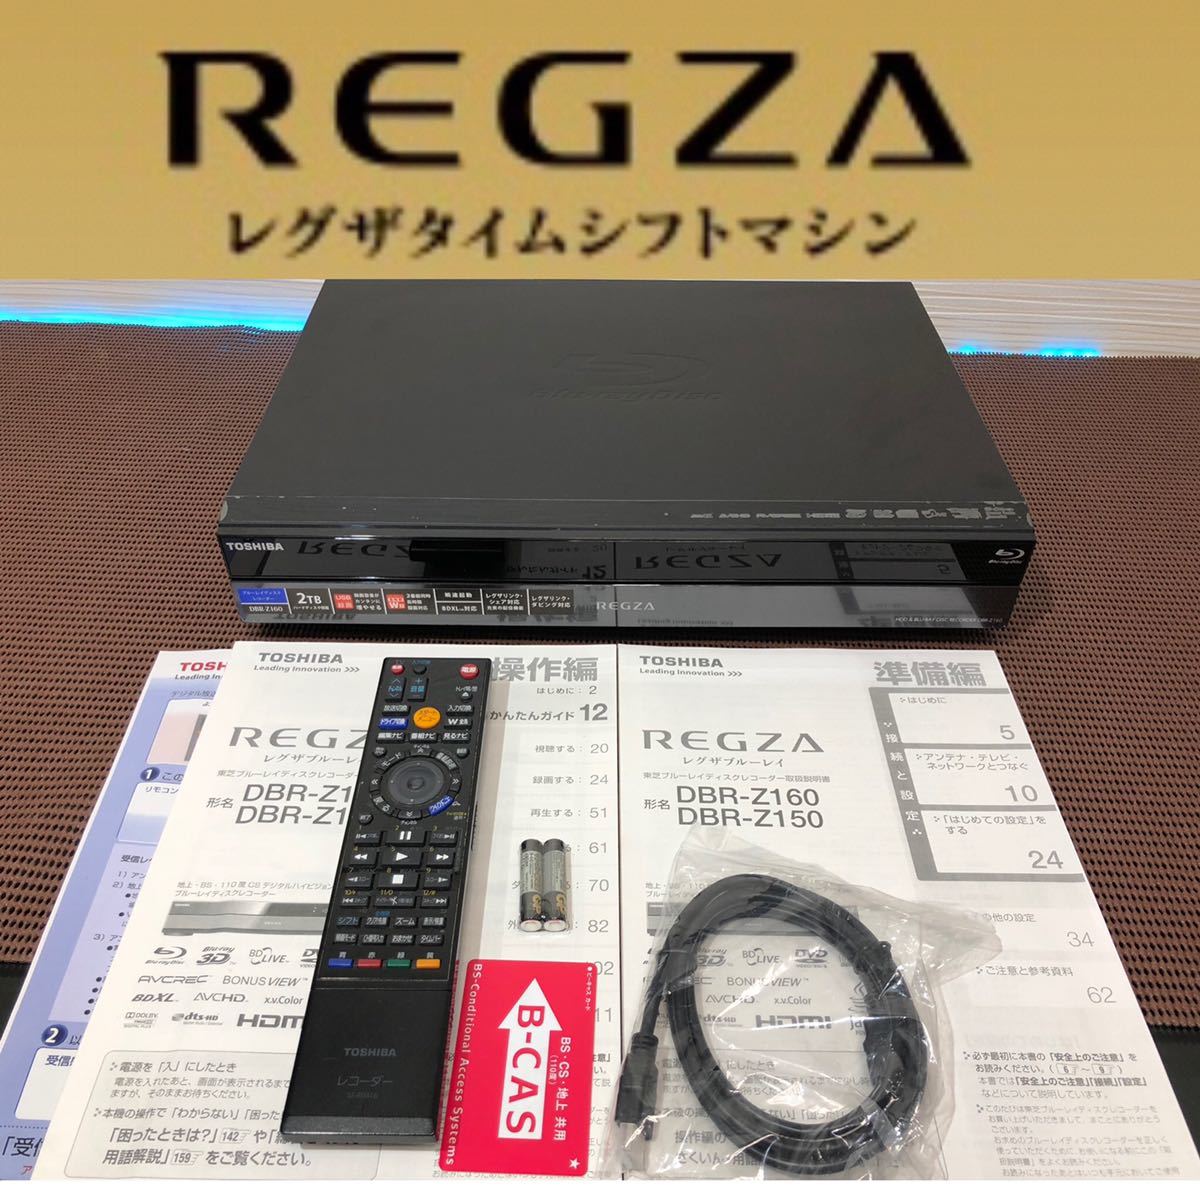 激安超安値 レグザブルーレイ DBR-Z160 REGZA TOSHIBA - ブルーレイレコーダー